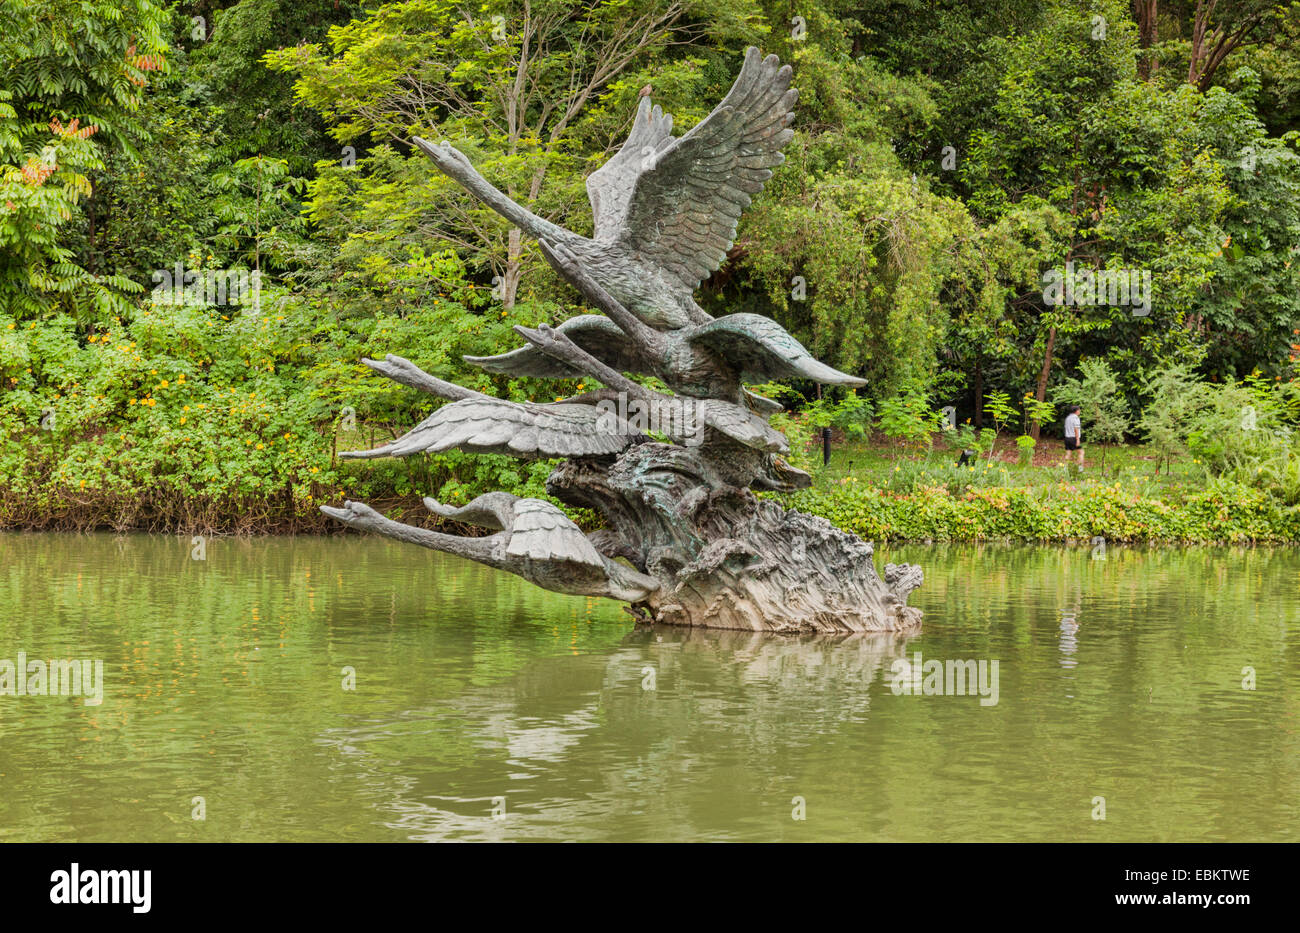 Los jardines botánicos de Singapur, el Cisne escultura, escultura de cisnes de tomar vuelo, el lago de los Cisnes. Foto de stock